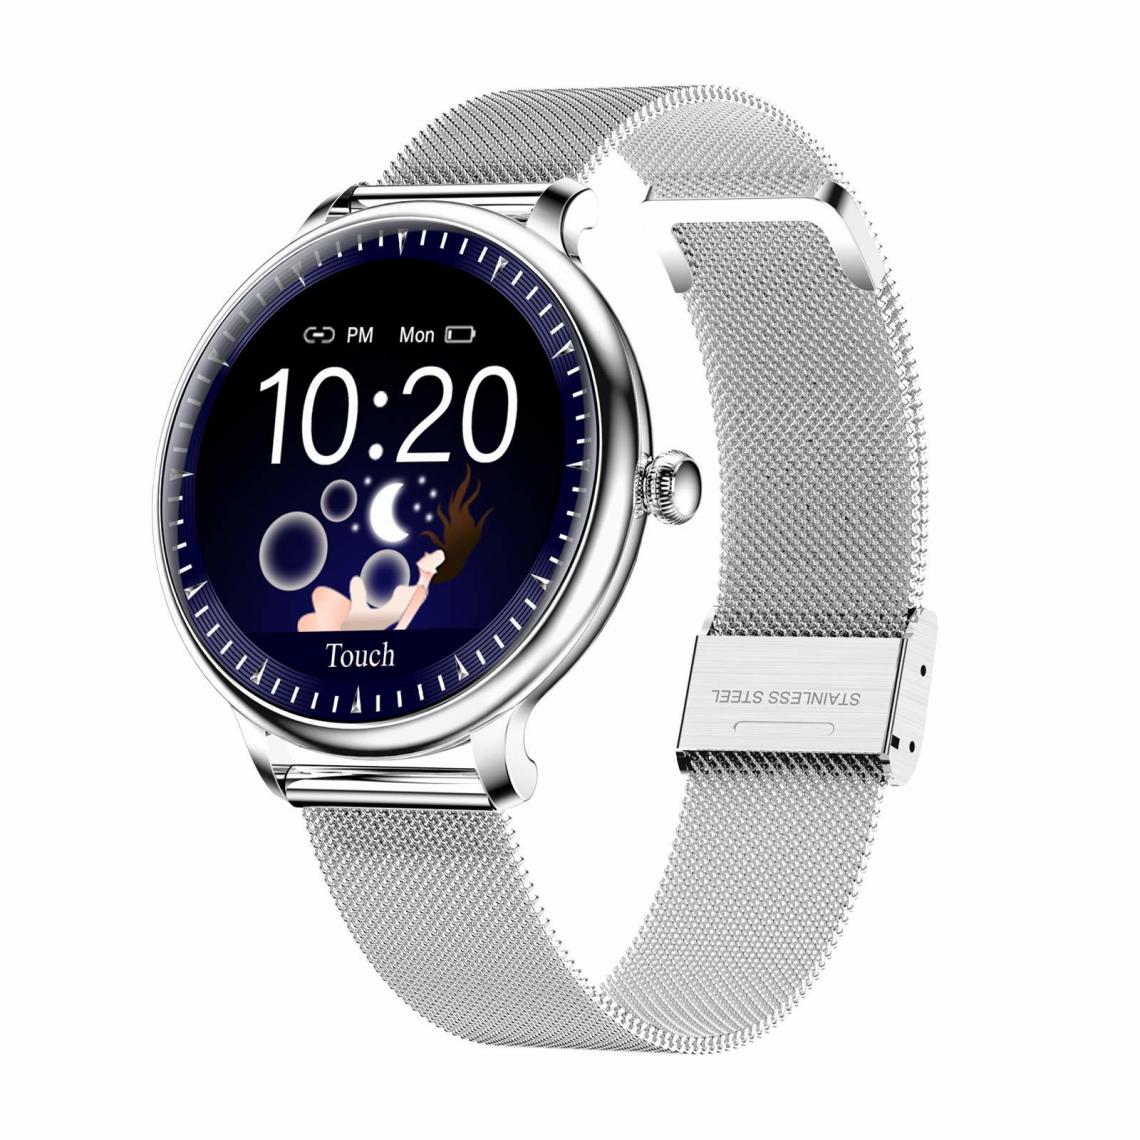 Chronotech Montres - Smart Watch ï¼Fitness Tracker Compatible with iOS, Android Phone, IP67 Waterproof Watch, Heart Rate Monitor, Sleep Tracker, Calorie Counter(silver) - Montre connectée